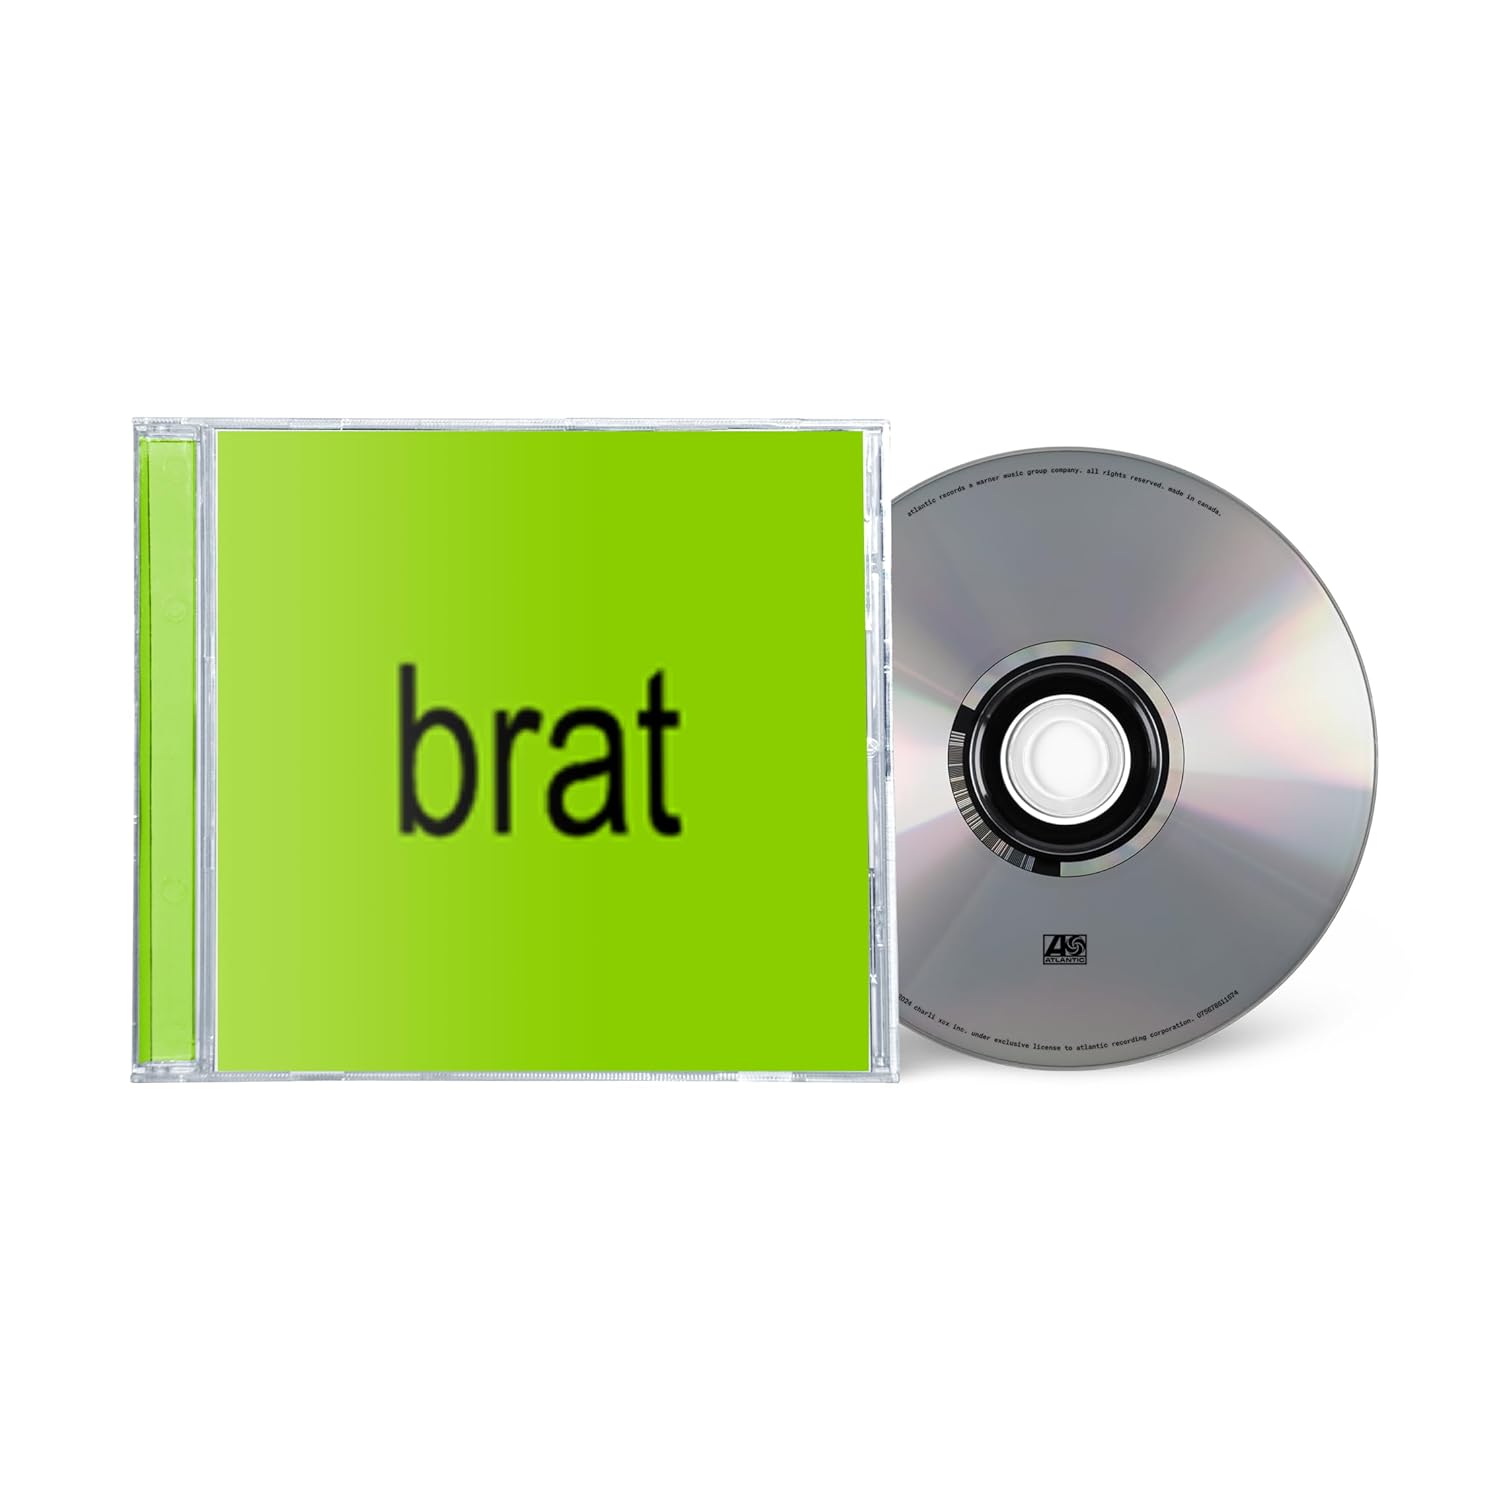 CHARLI XCX – BRAT CD